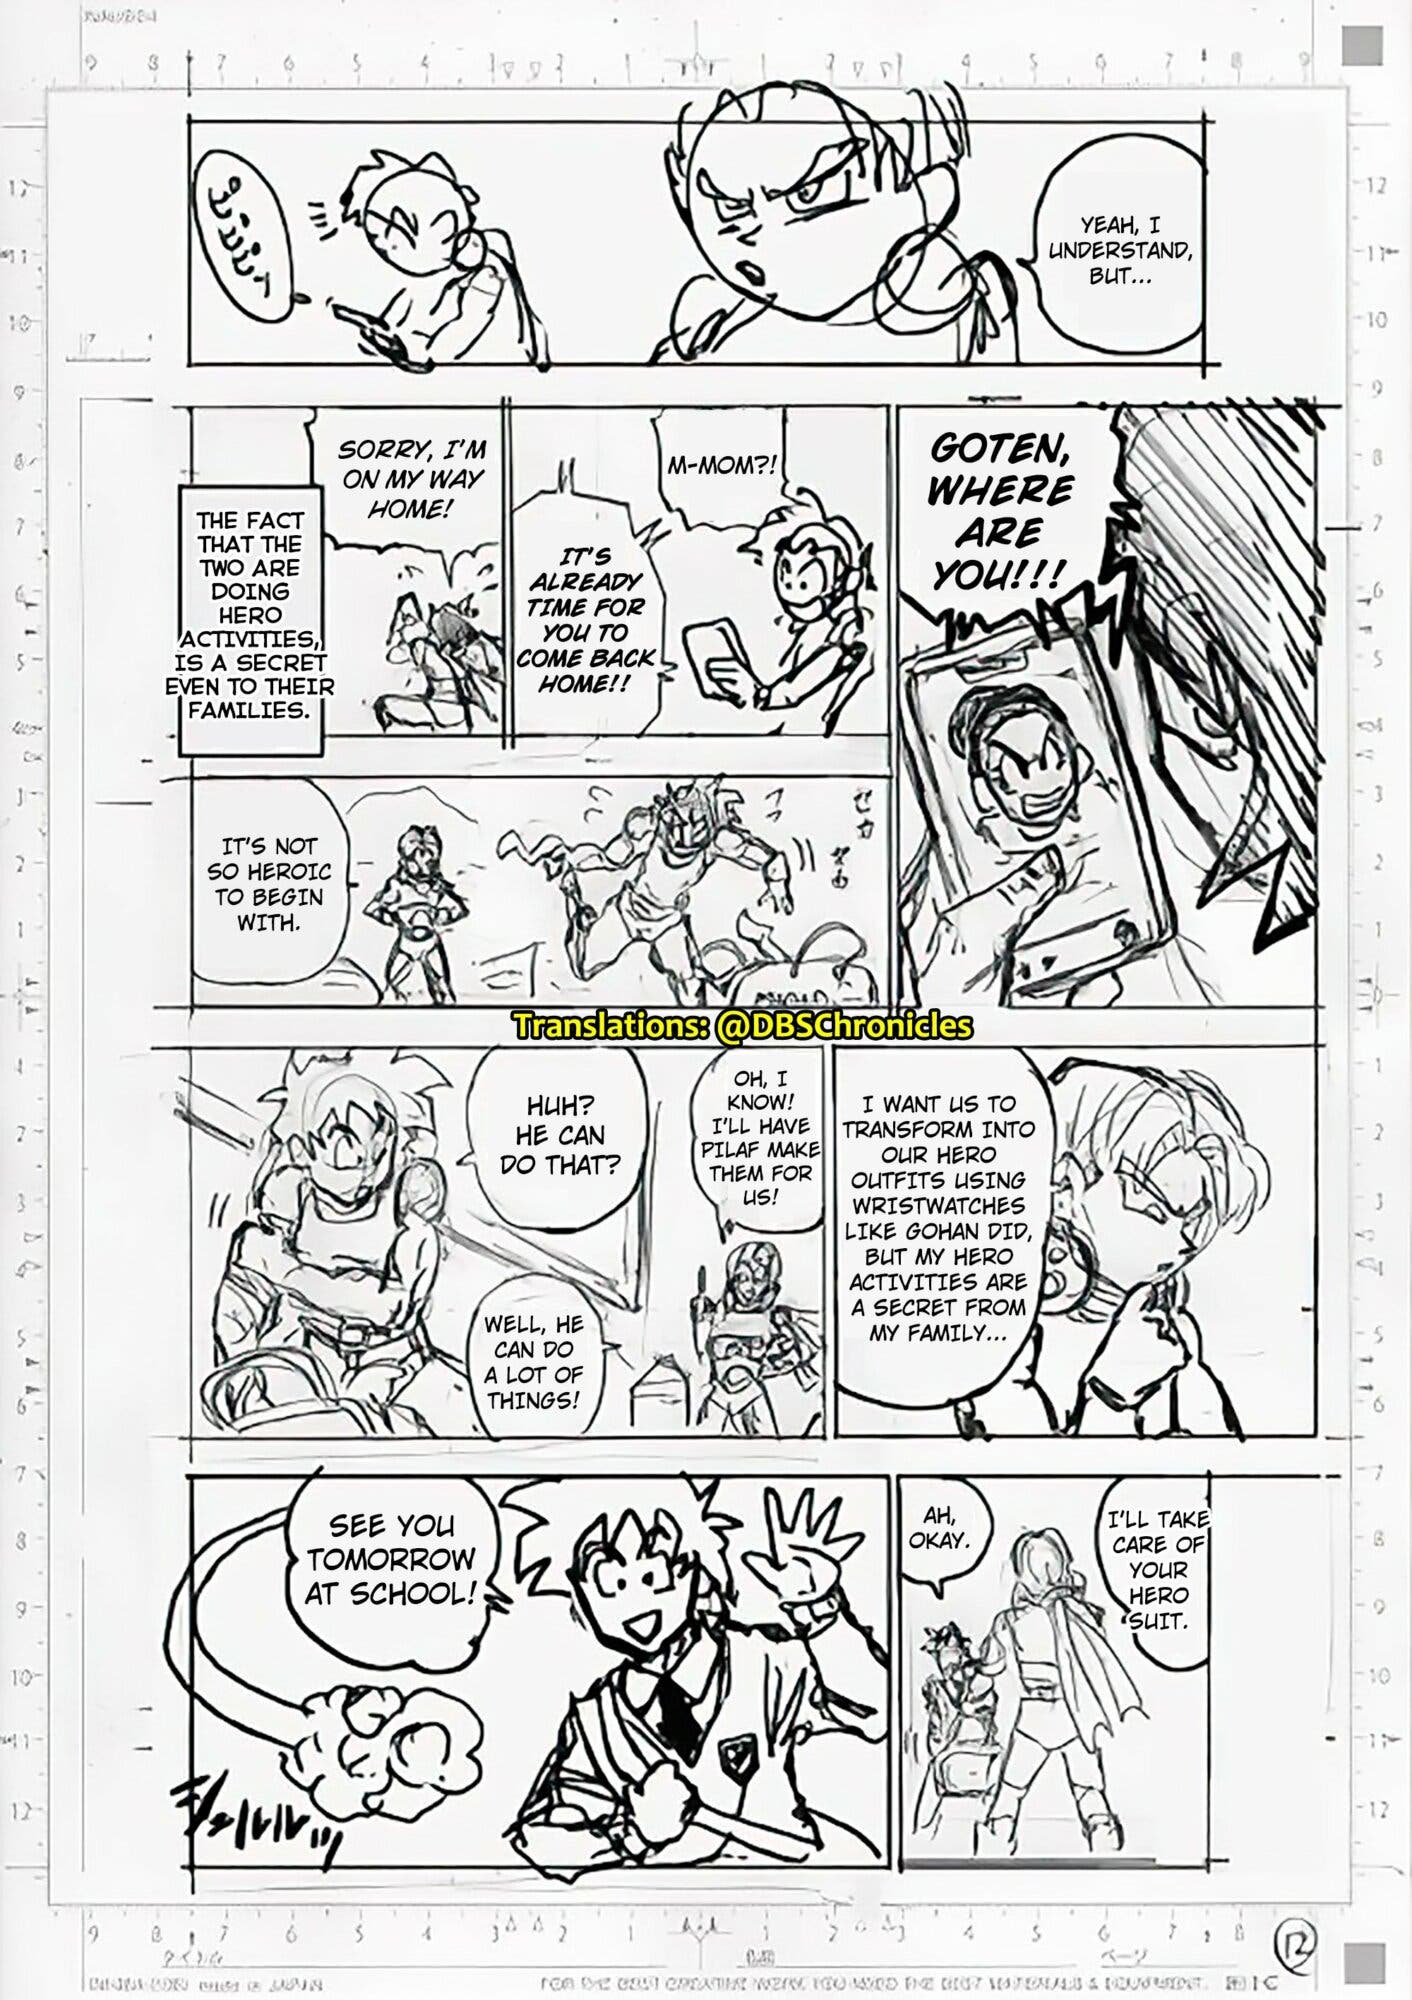 Dragon Ball Super: cómo leer el capítulo 88 del manga en español y gratis  en línea